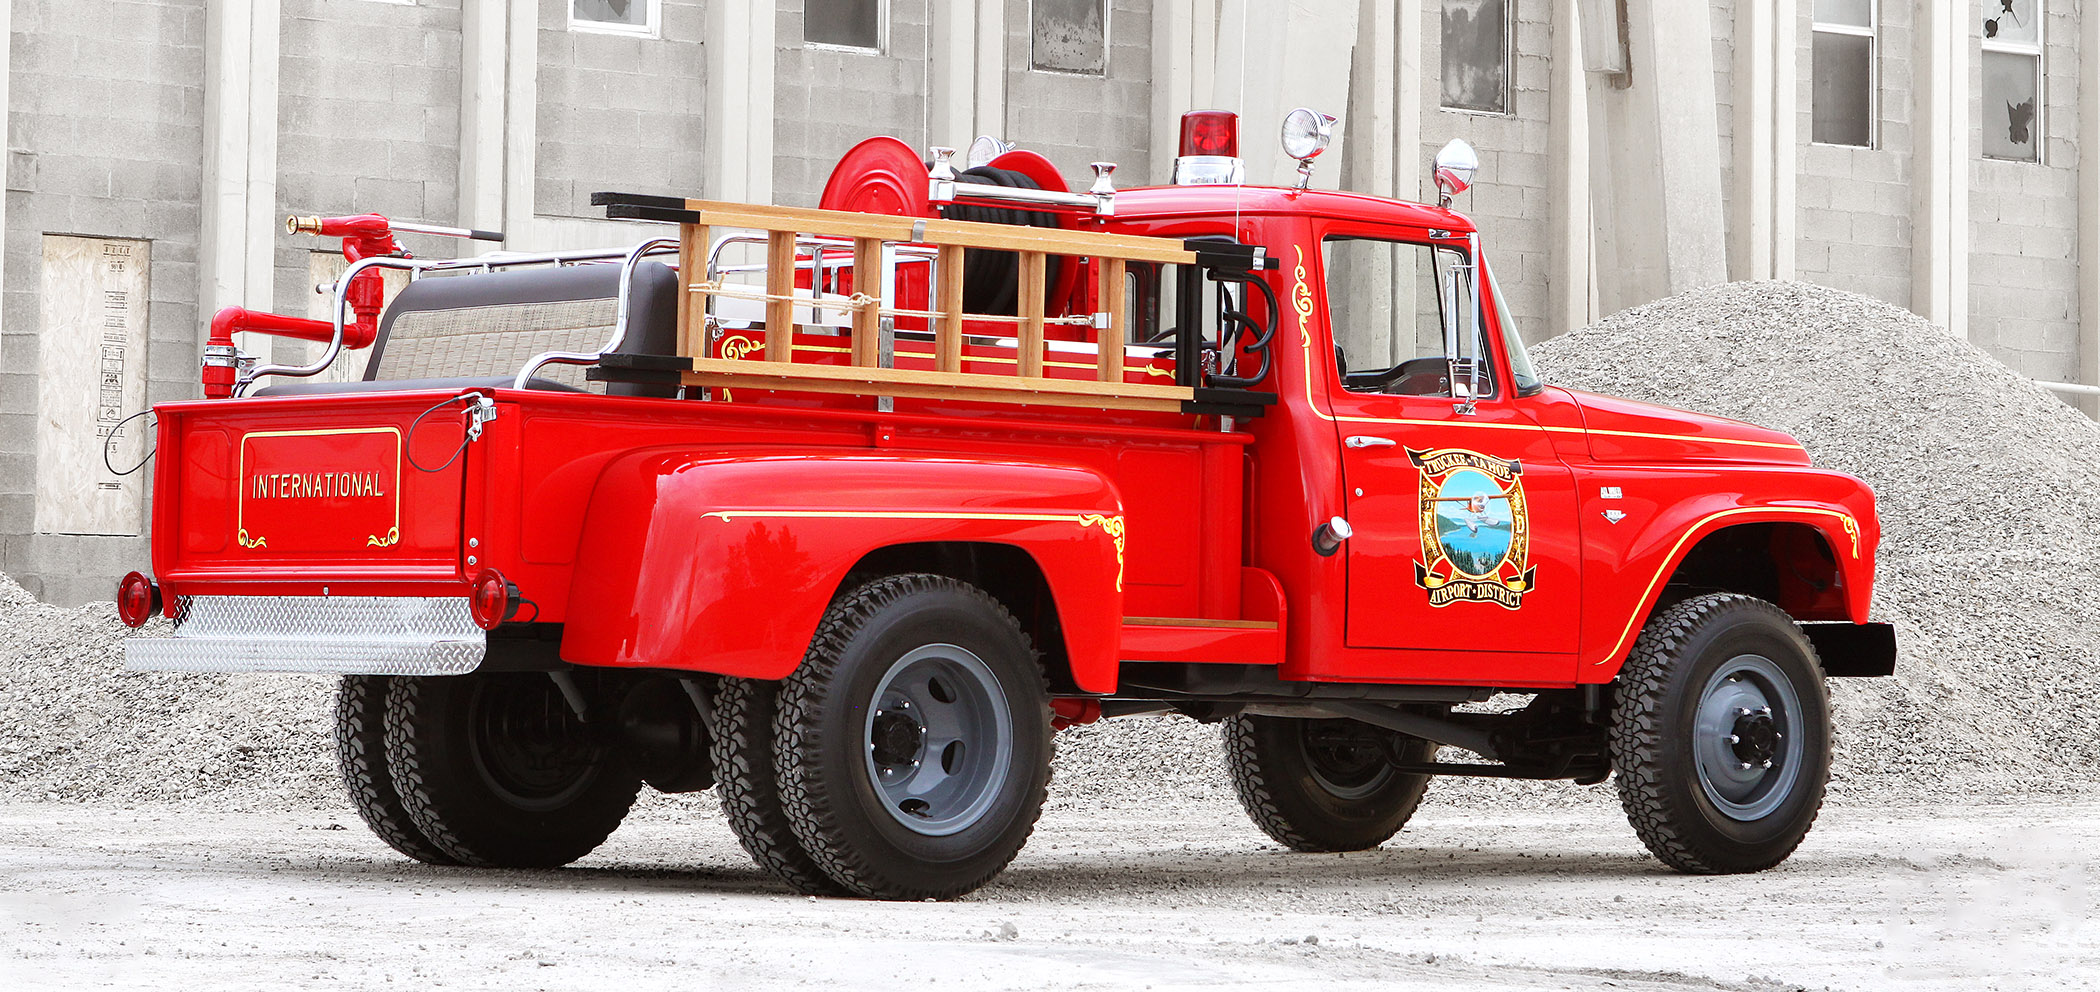 ’66 International Fire Truck